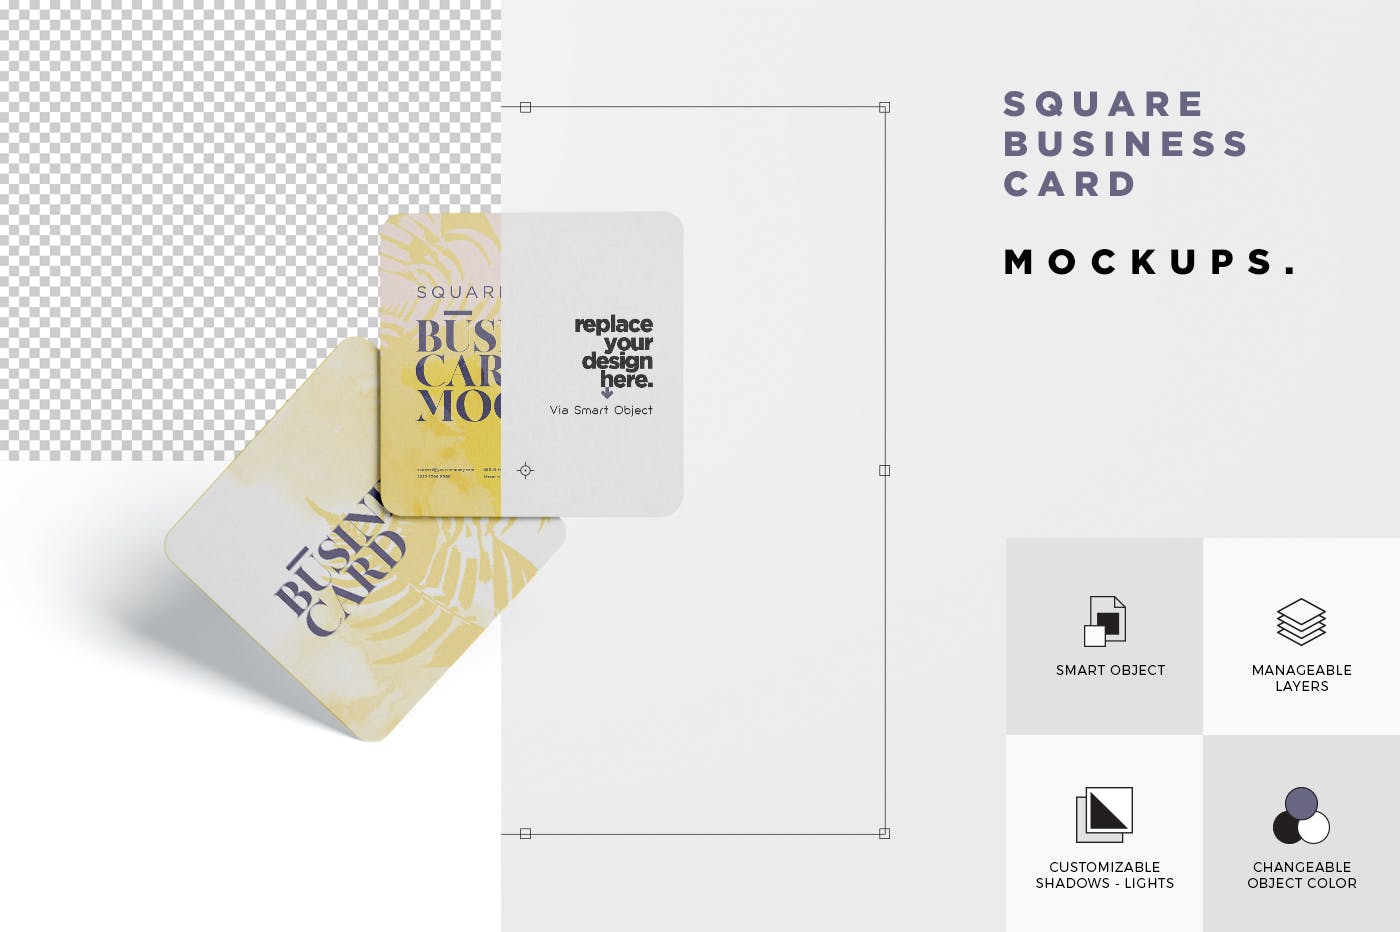 圆角设计风格企业名片效果图素材库精选 Business Card Mockup – Square Round Corner插图(5)